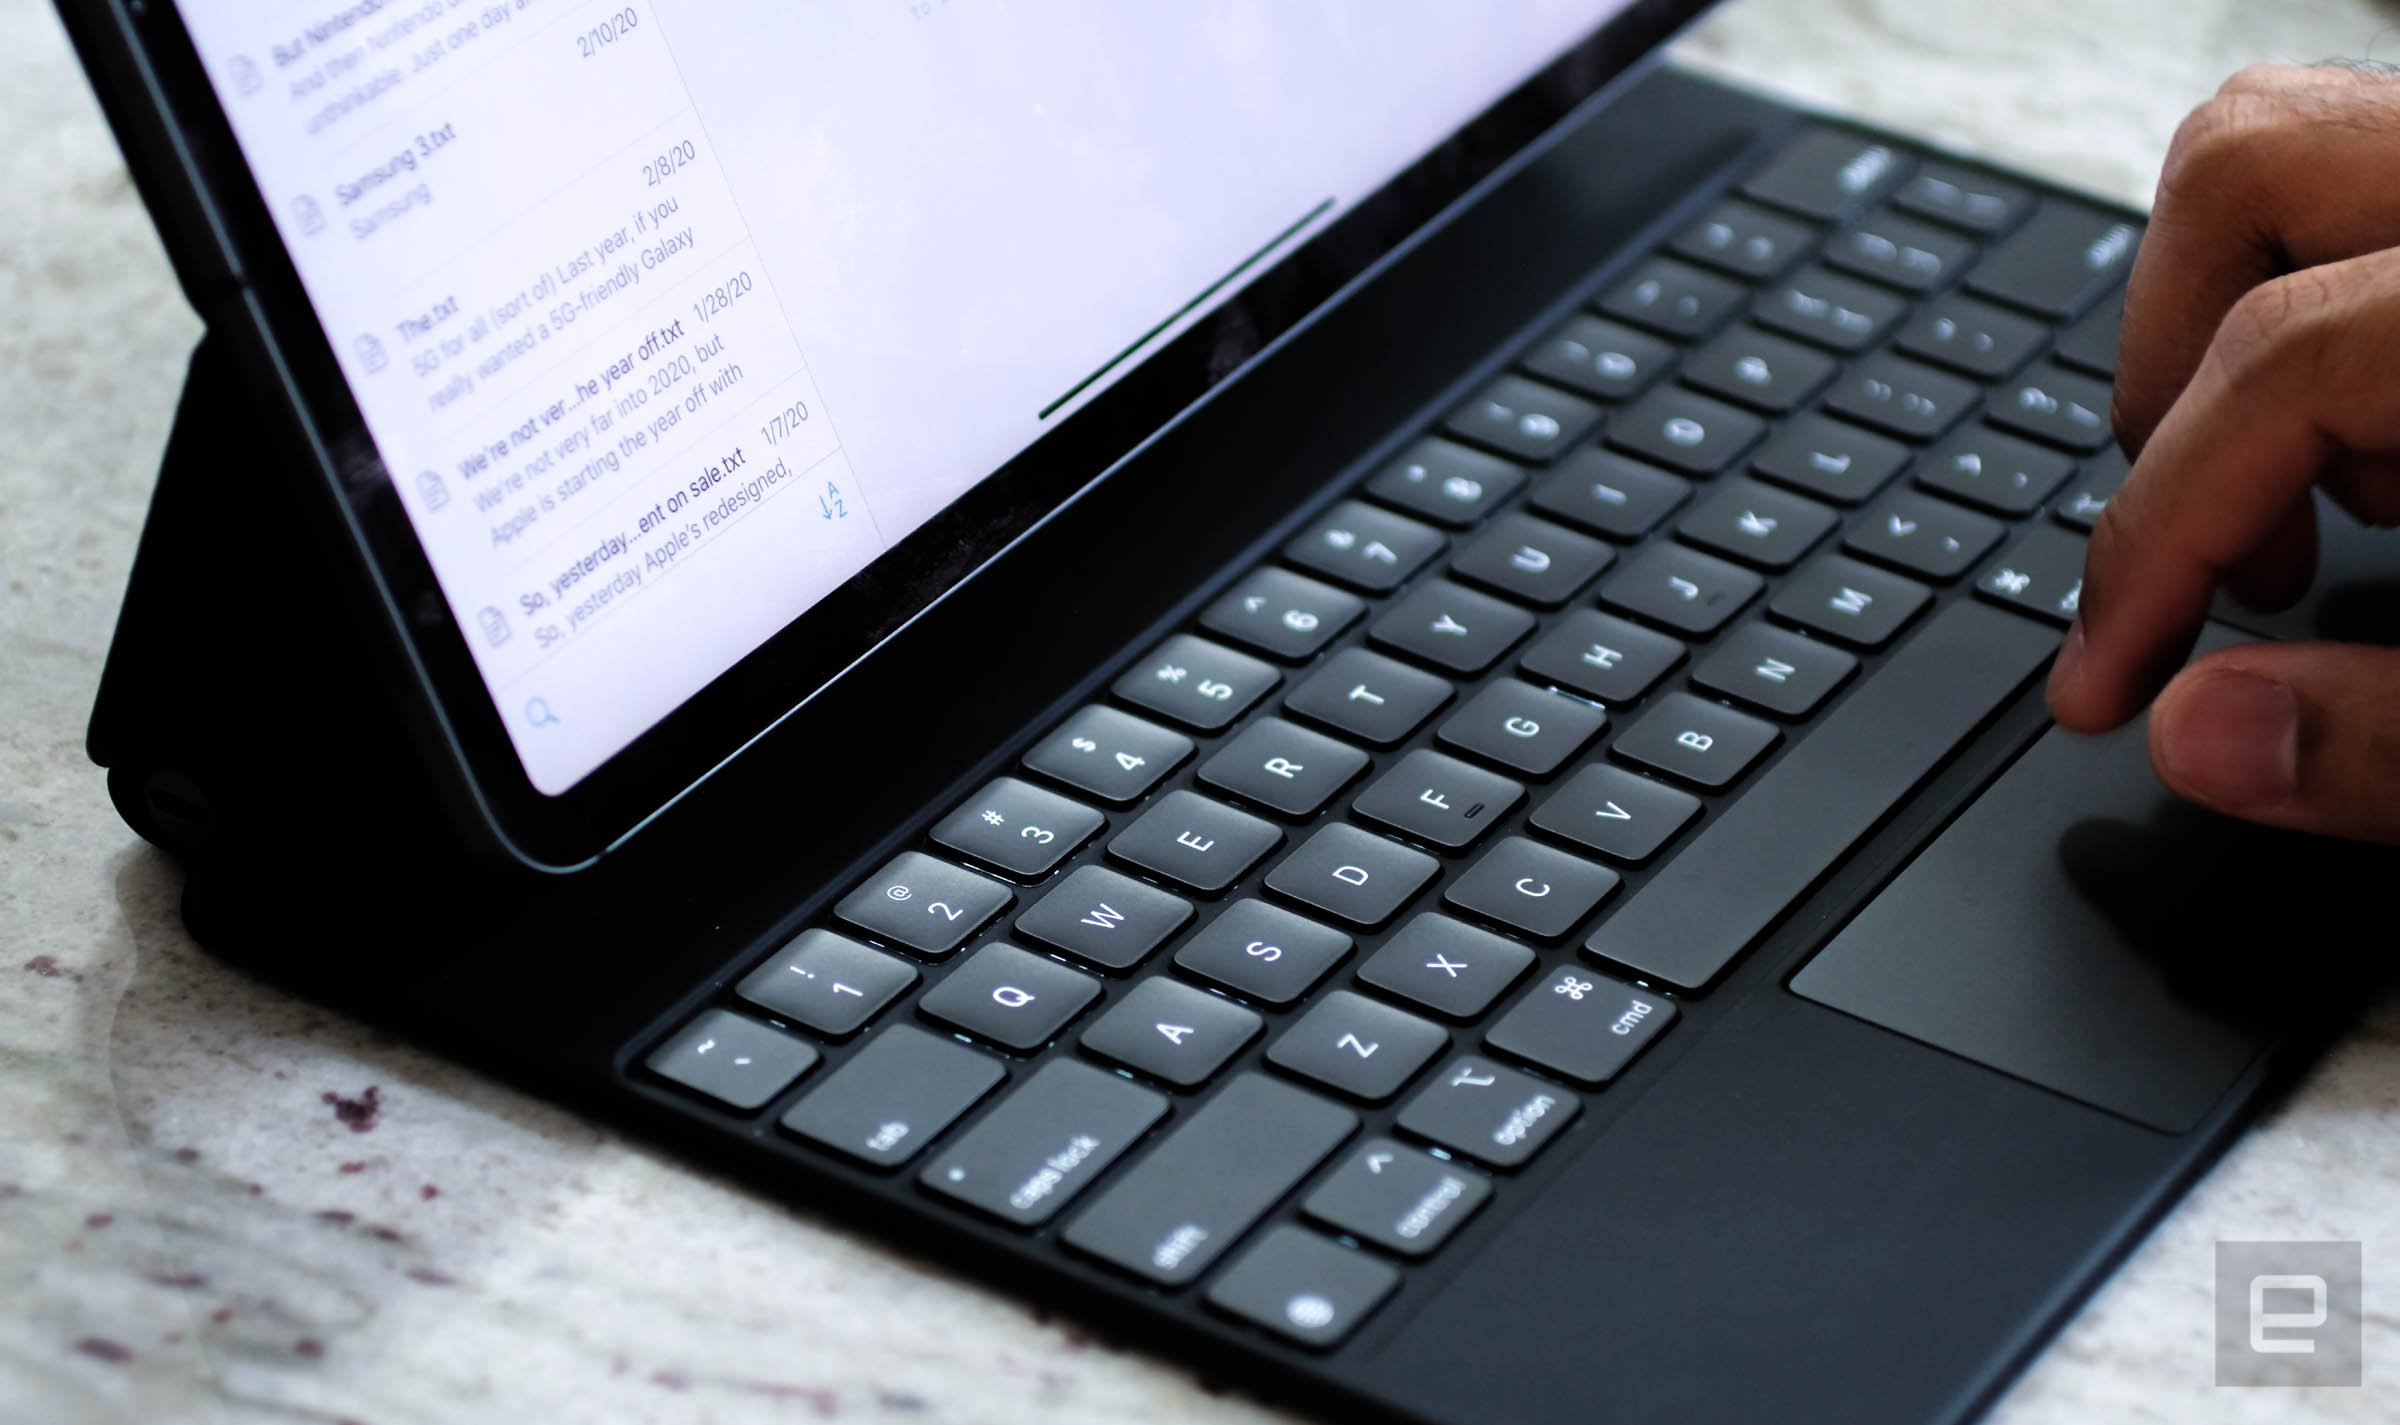 Tháo tung bàn phím Magic Keyboard mới cho iPad Pro 2020 cùng iFixit